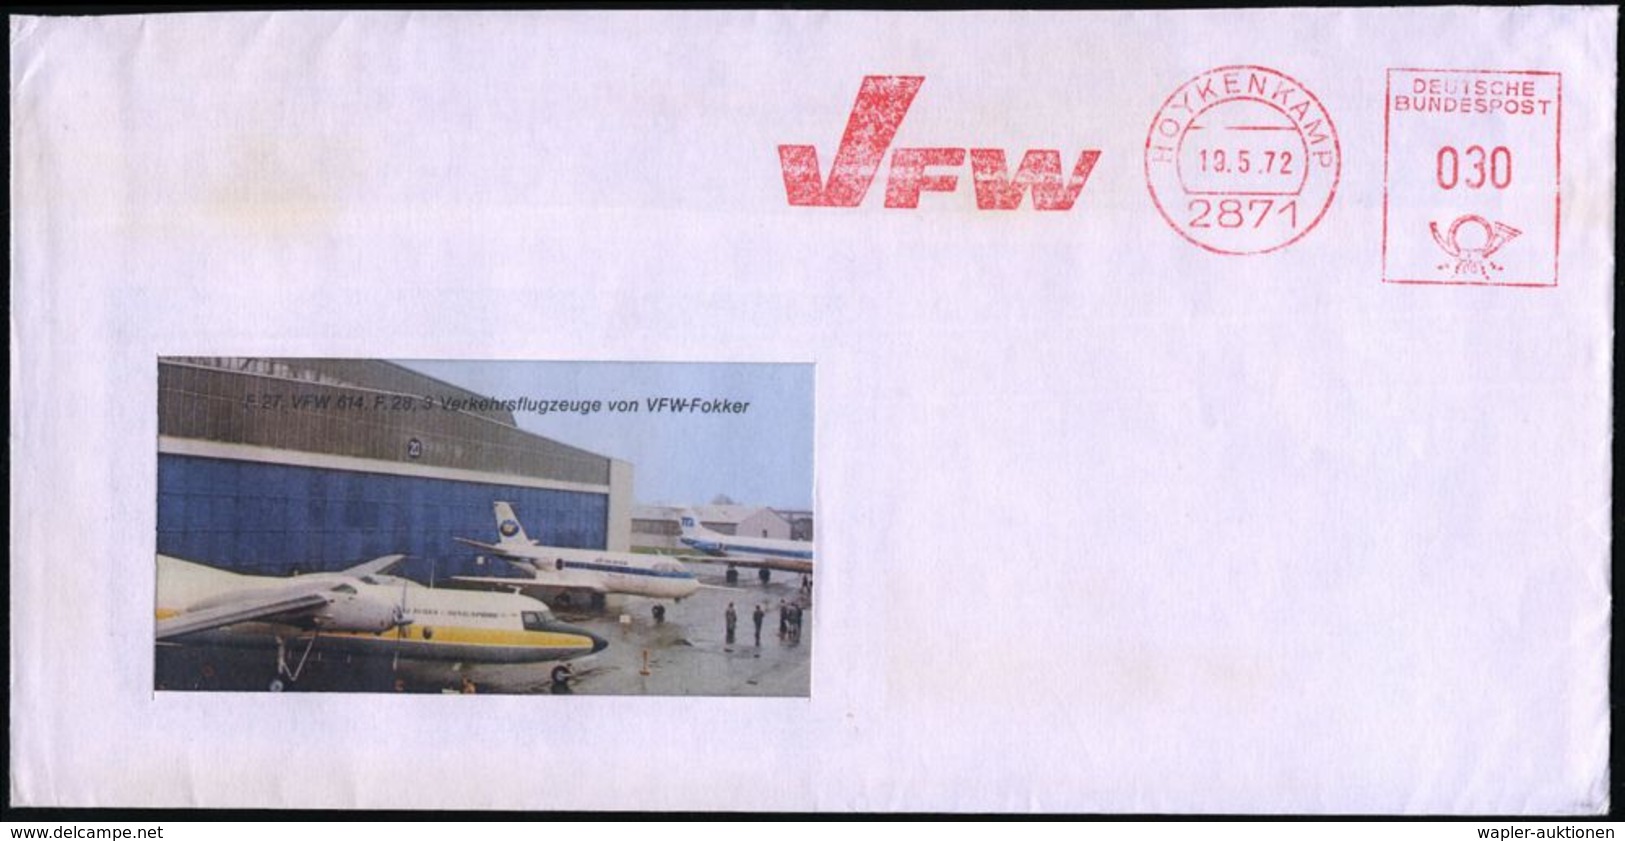 FLUGZEUGINDUSTRIE & -TYPEN : 2871 HOYKENKAMP/ VFW 1972 (19.5.) AFS = V Ereinigte Flugzeug-Werke Fokker GmbH A. Reklame-B - Aerei